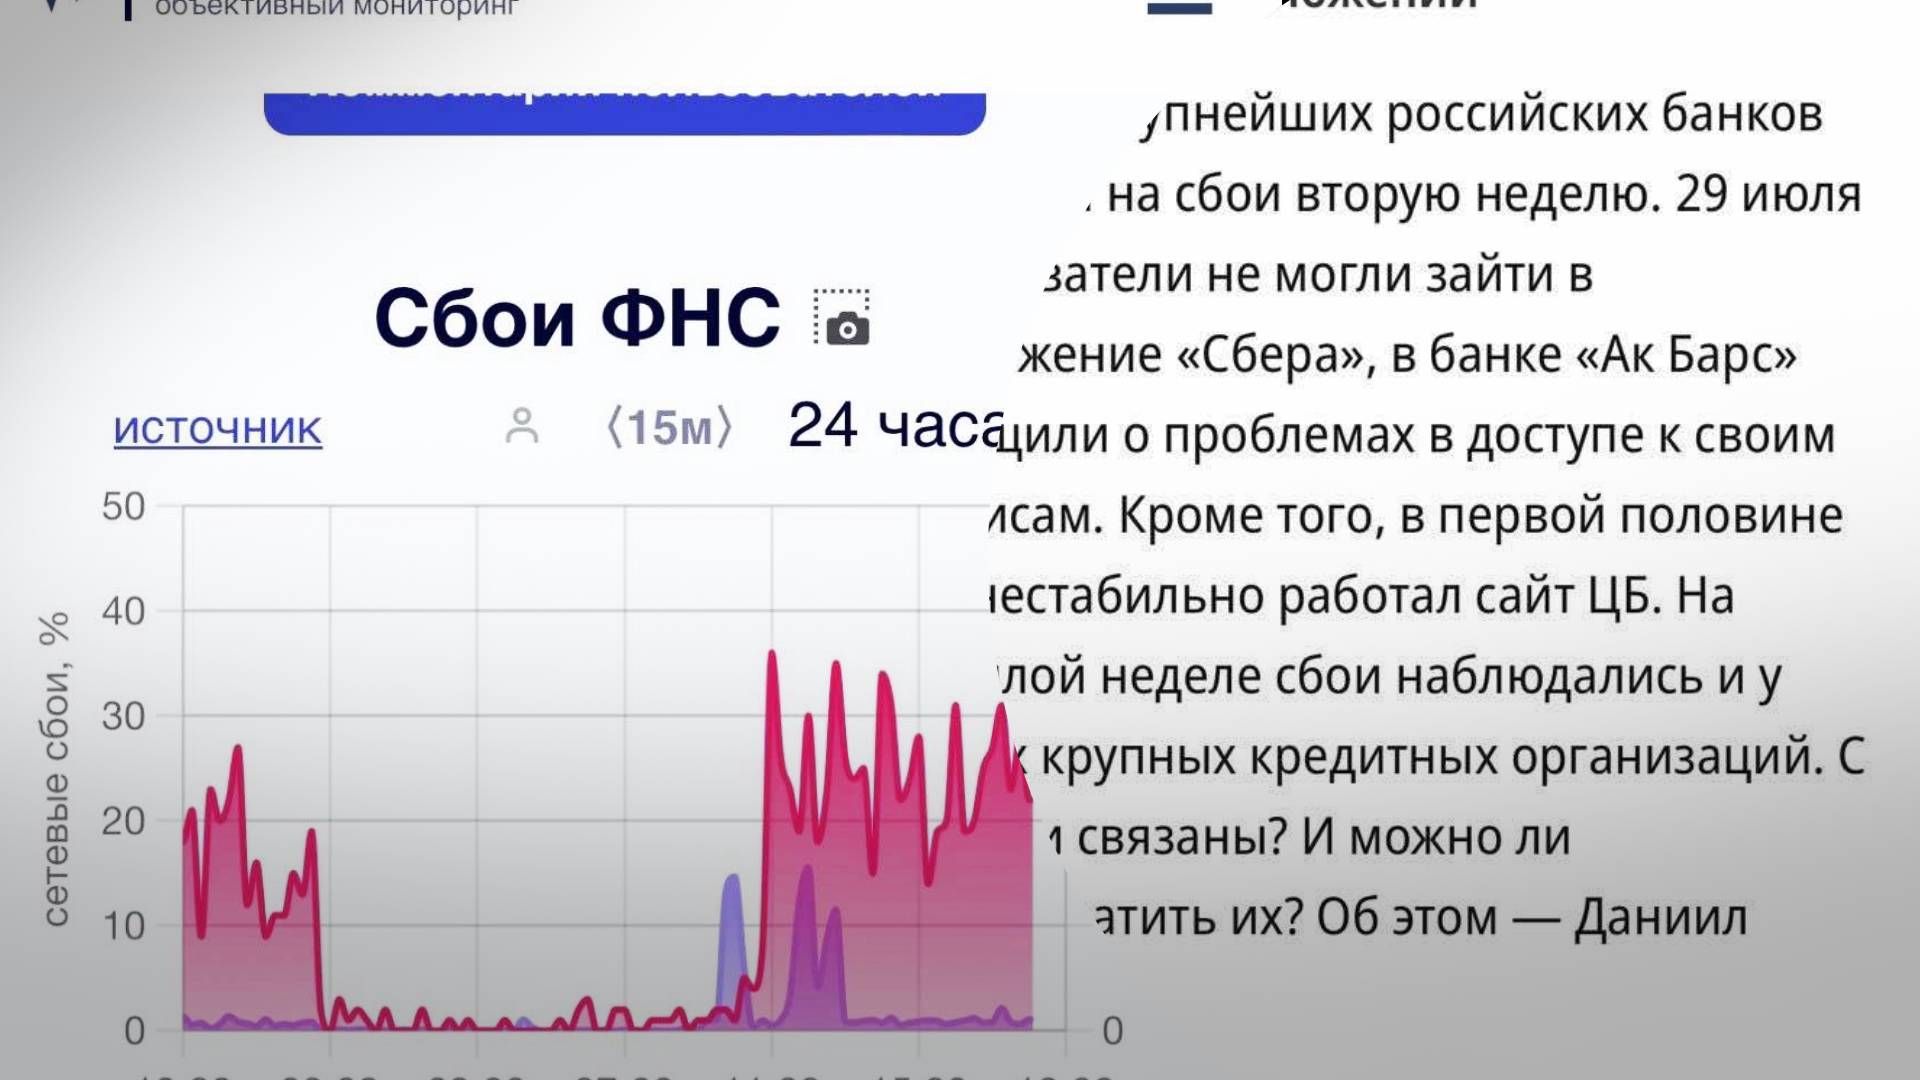 "Ковровая хакерская бомбардировка": ГУР завершило масштабную кибератаку на Россию - 24 Канал